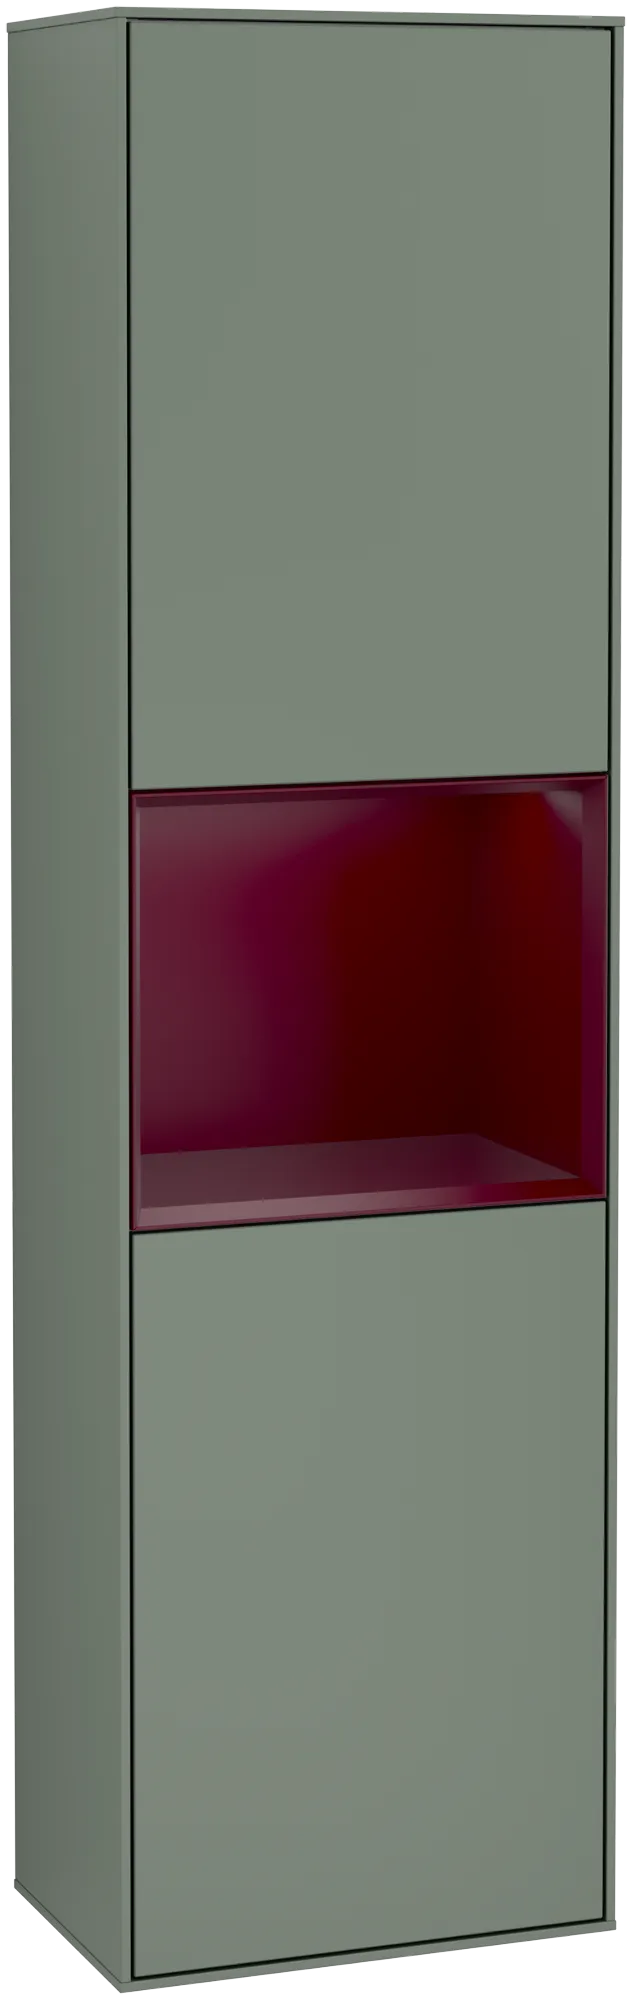 Bild von VILLEROY BOCH Finion Hochschrank, mit Beleuchtung, 2 Türen, 418 x 1516 x 270 mm, Olive Matt Lacquer / Peony Matt Lacquer #G470HBGM